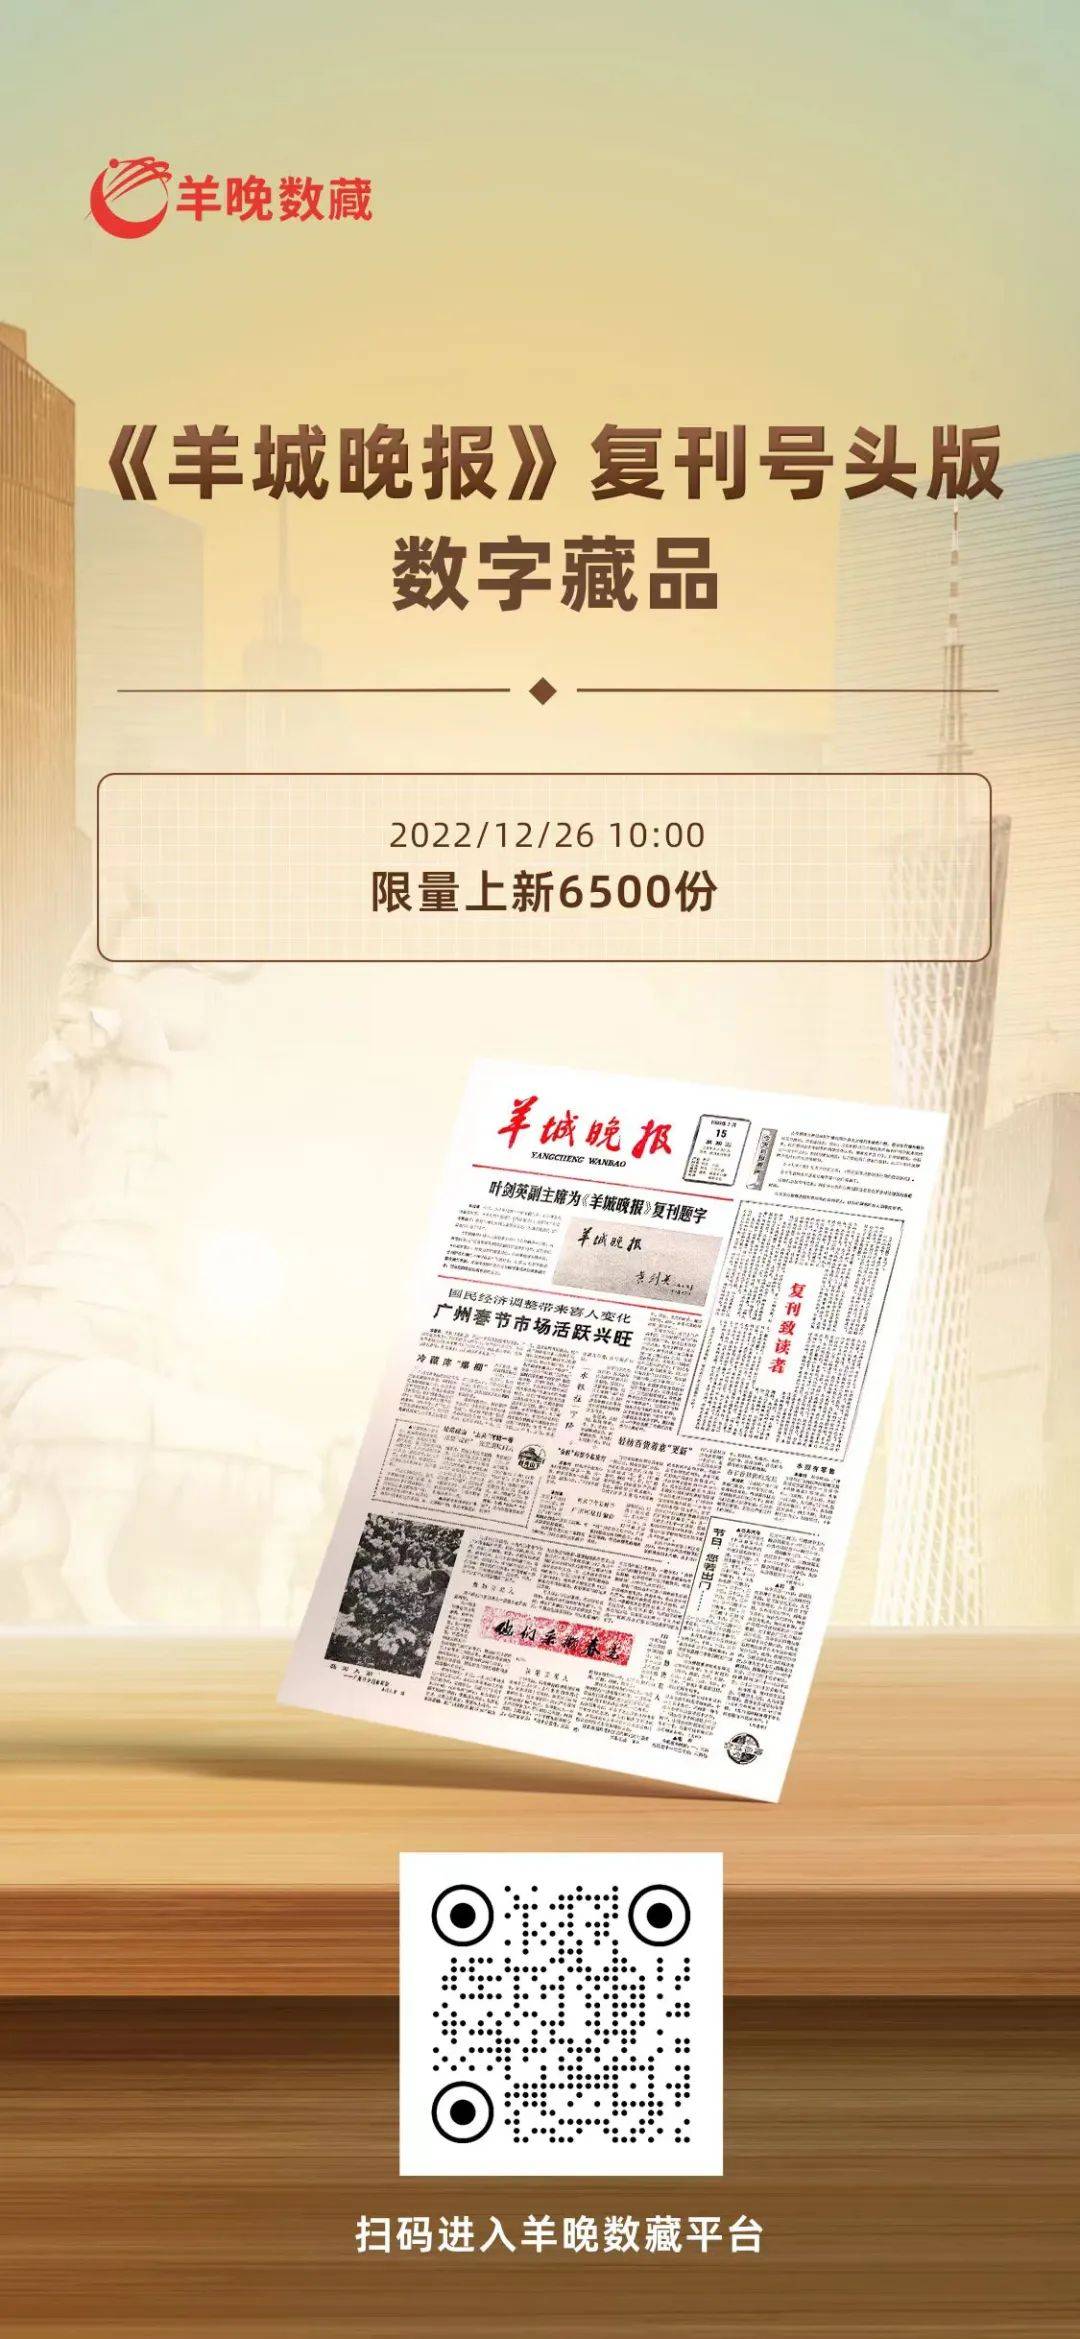 华为手机微信实名认证
:《羊城晚报》复刊号头版数字藏品今日上线兑换